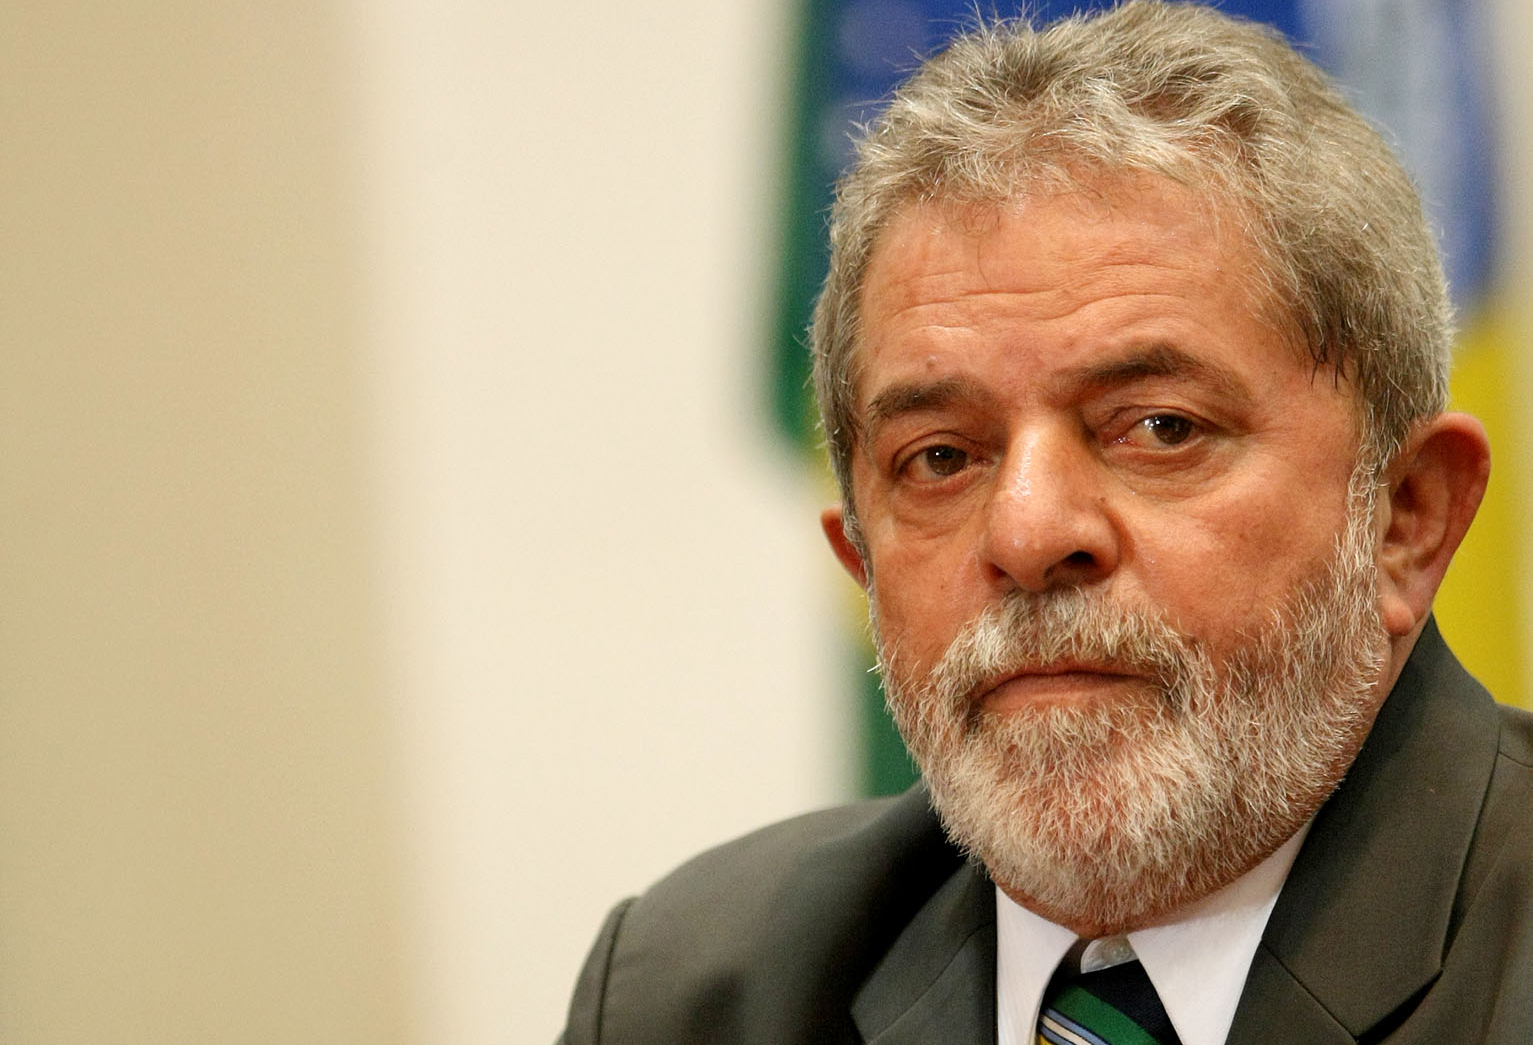 LULA PODE SER PRESO: Habeas corpus preventivo pede que ex-presidente Lula não seja preso na Lava Jato